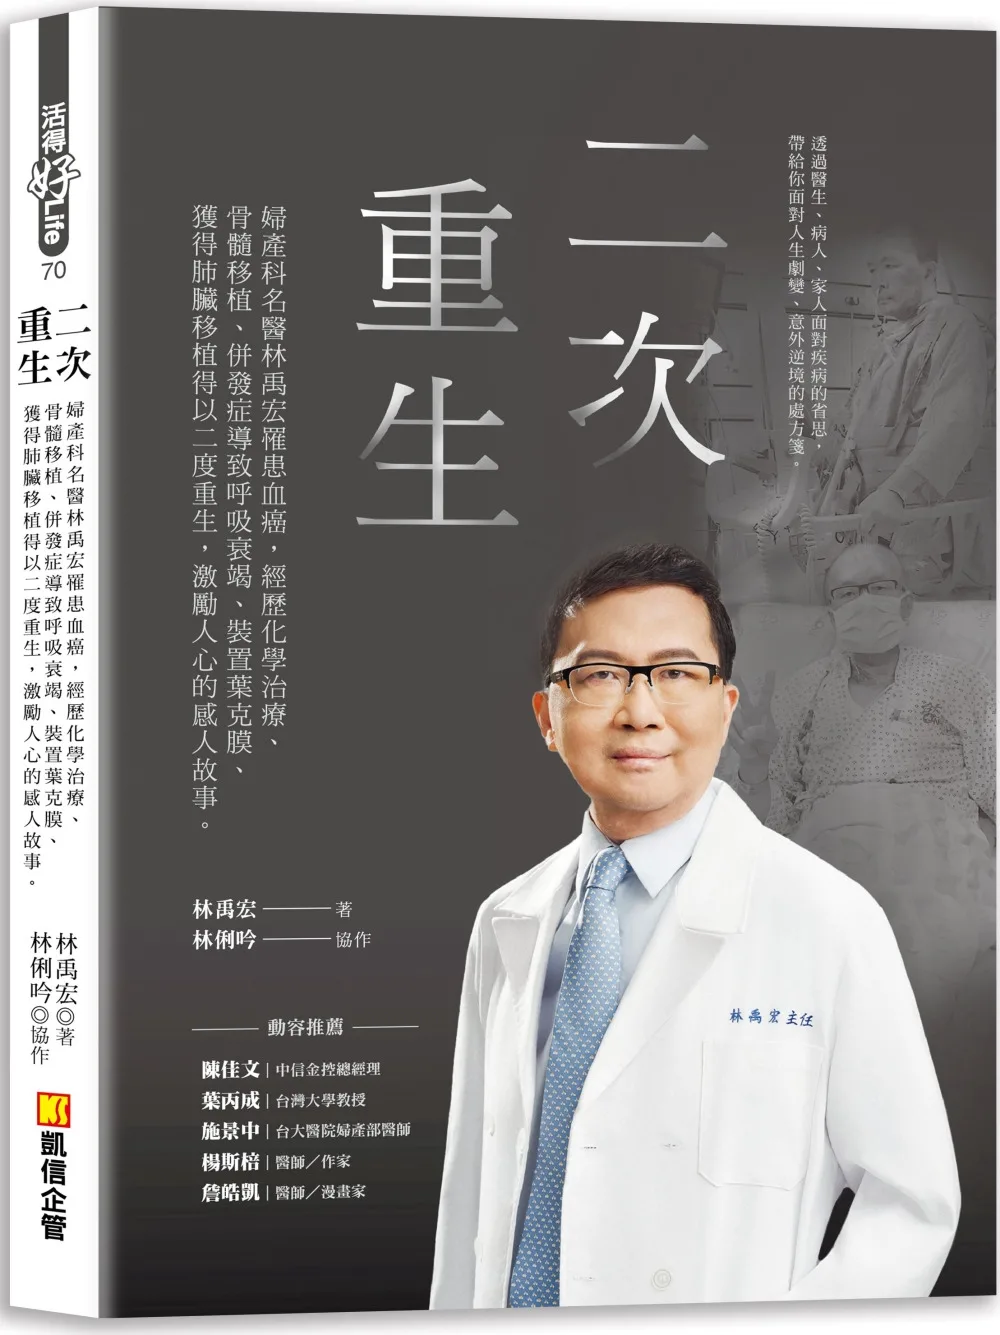 二次重生：婦產科名醫林禹宏罹患血癌，經歷化學治療、骨髓移植、併發症導致呼